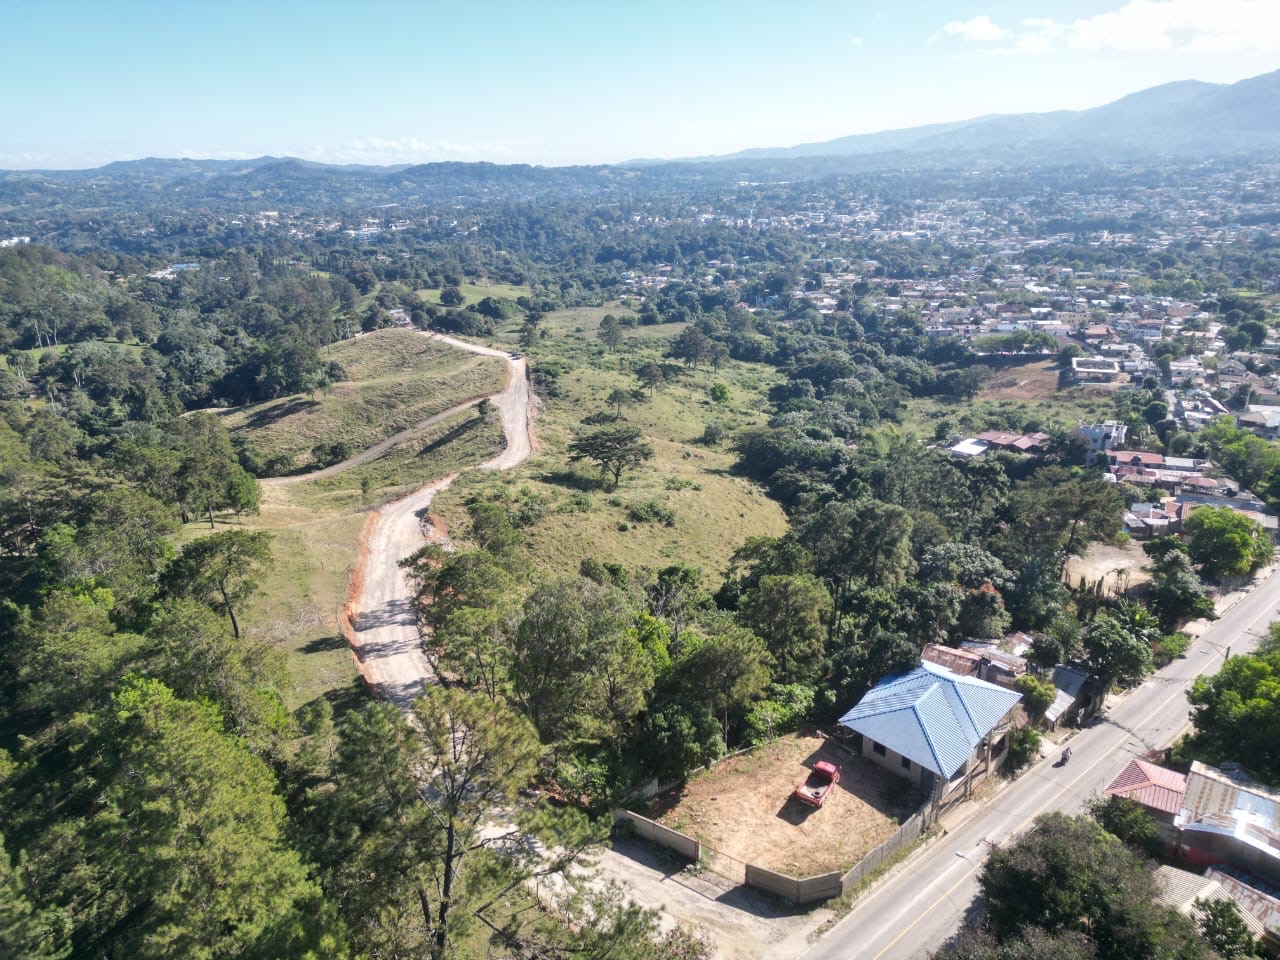 solares y terrenos - Terreno en venta Jarabacoa 500 metros planos lugar centrico 5 minutos del centro 3